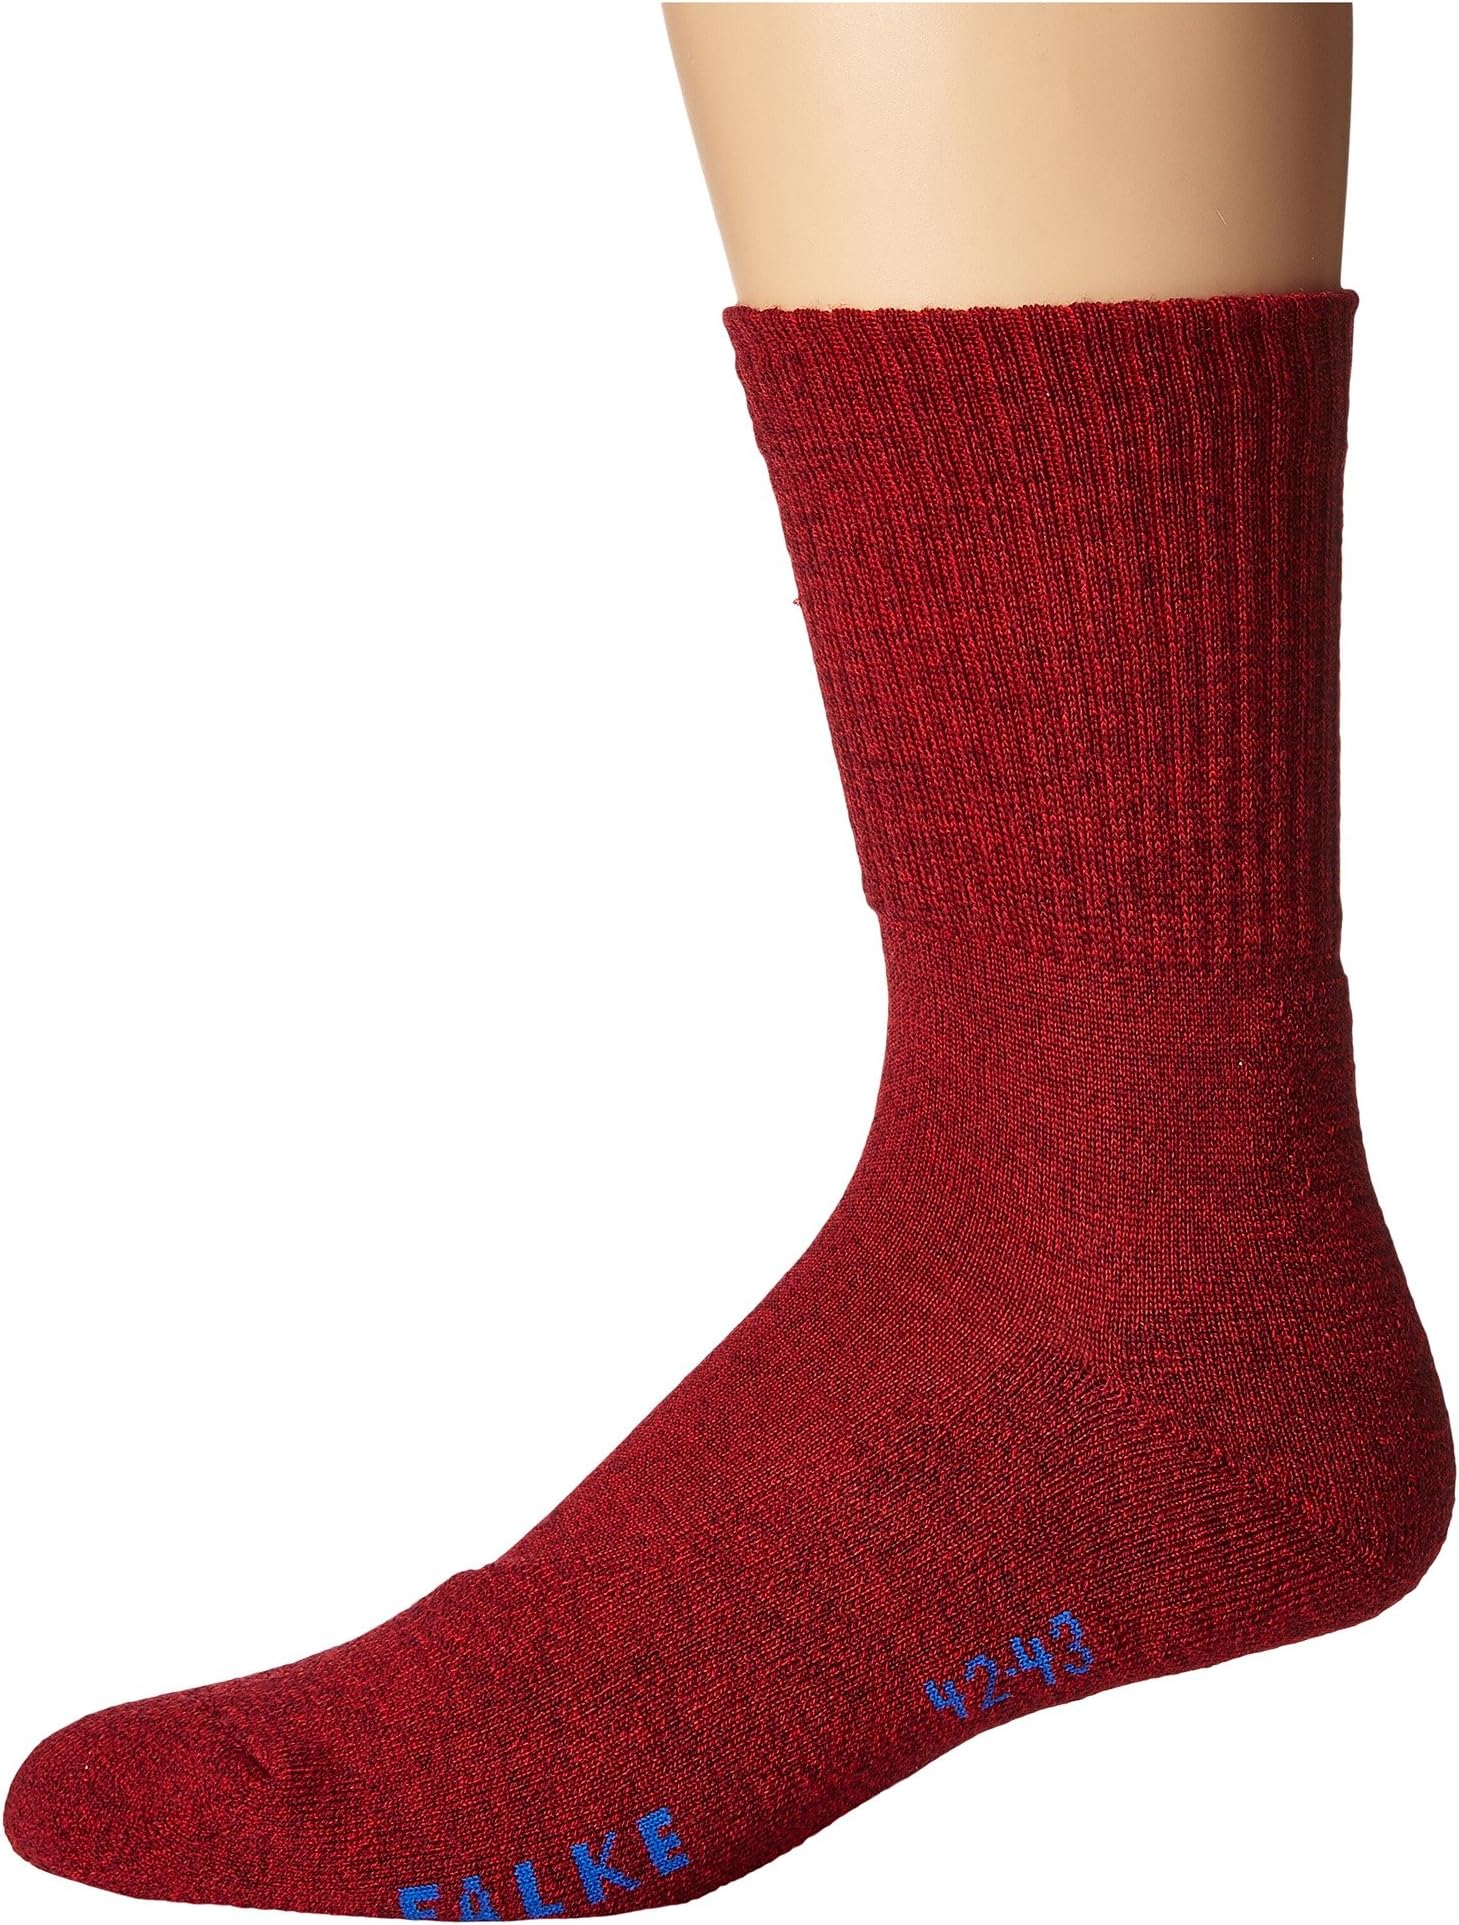 Легкие носки для рации Falke, цвет Scarlet легкие носки для рации falke цвет light denim